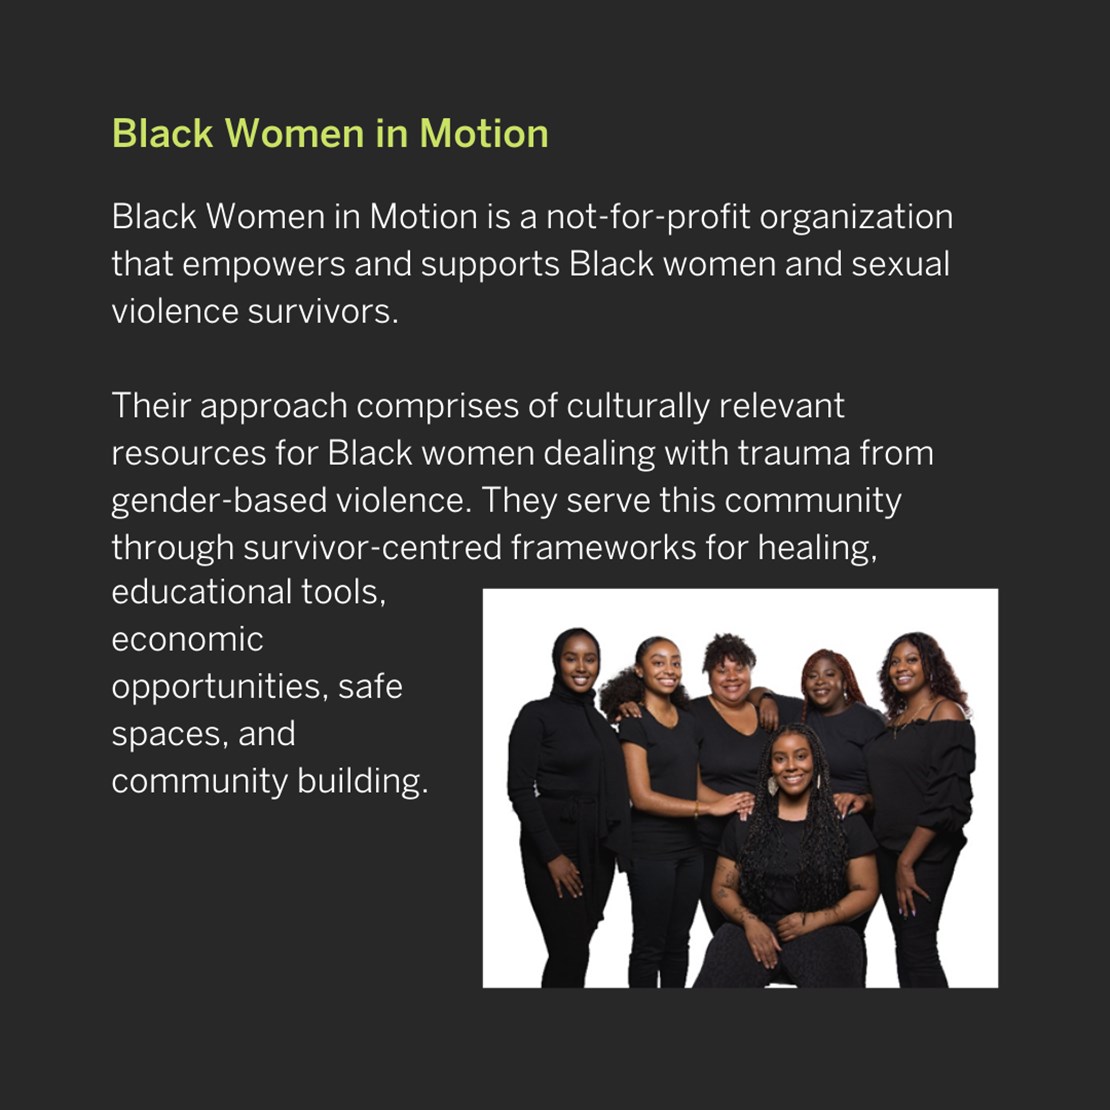 Black Women in Motion